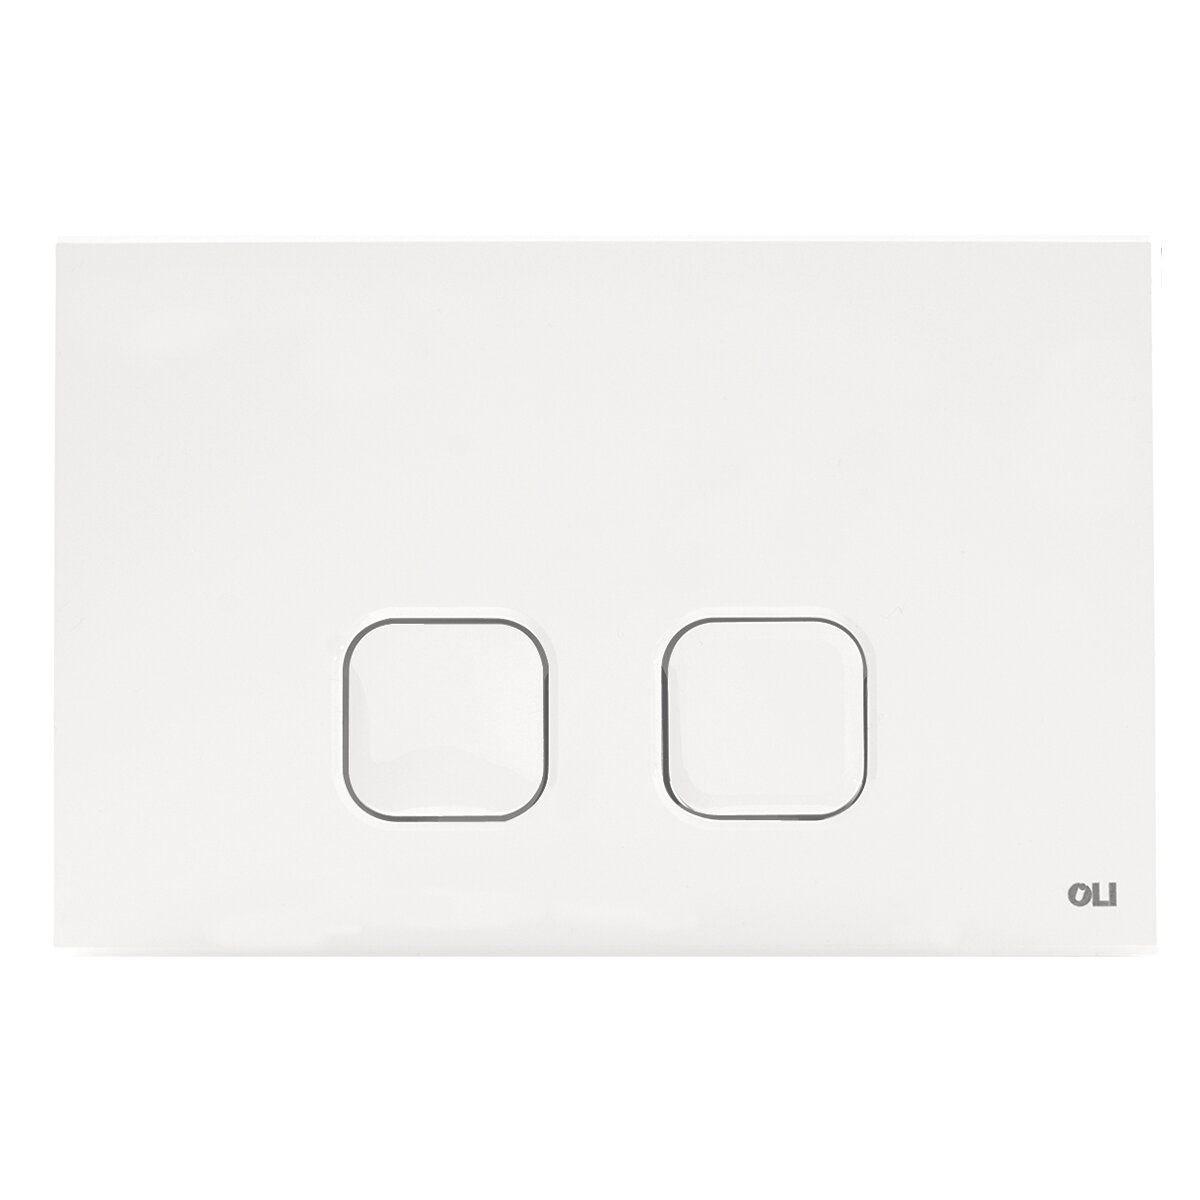 Double button plate OLI PLAIN White